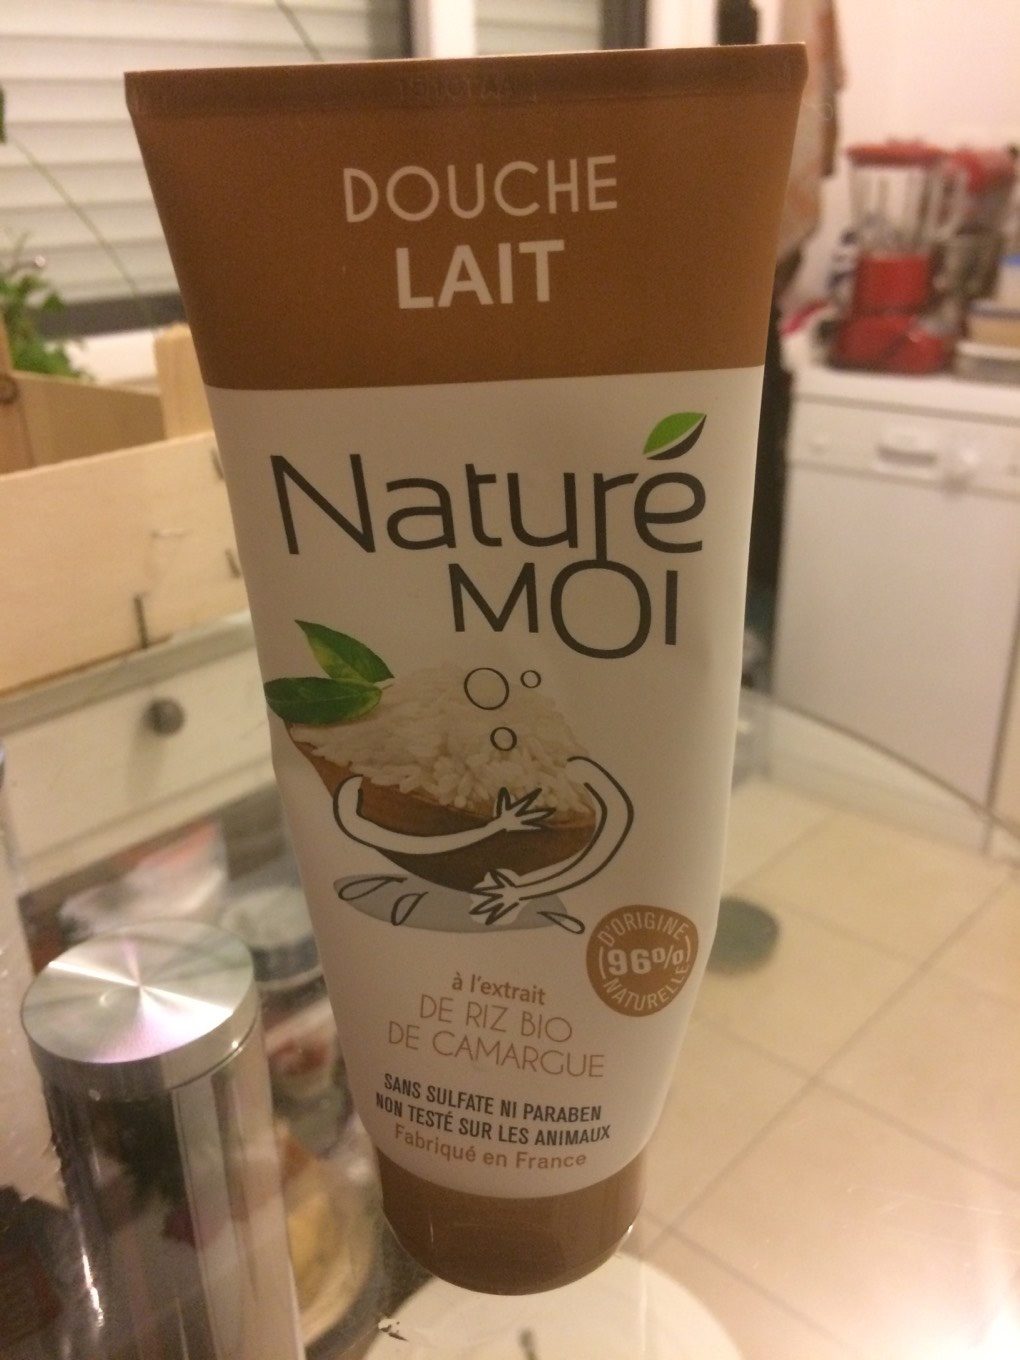 NaturéMOI - Douche Lait Riz Bio / Milch-Dusche Mit Reis - Product - fr